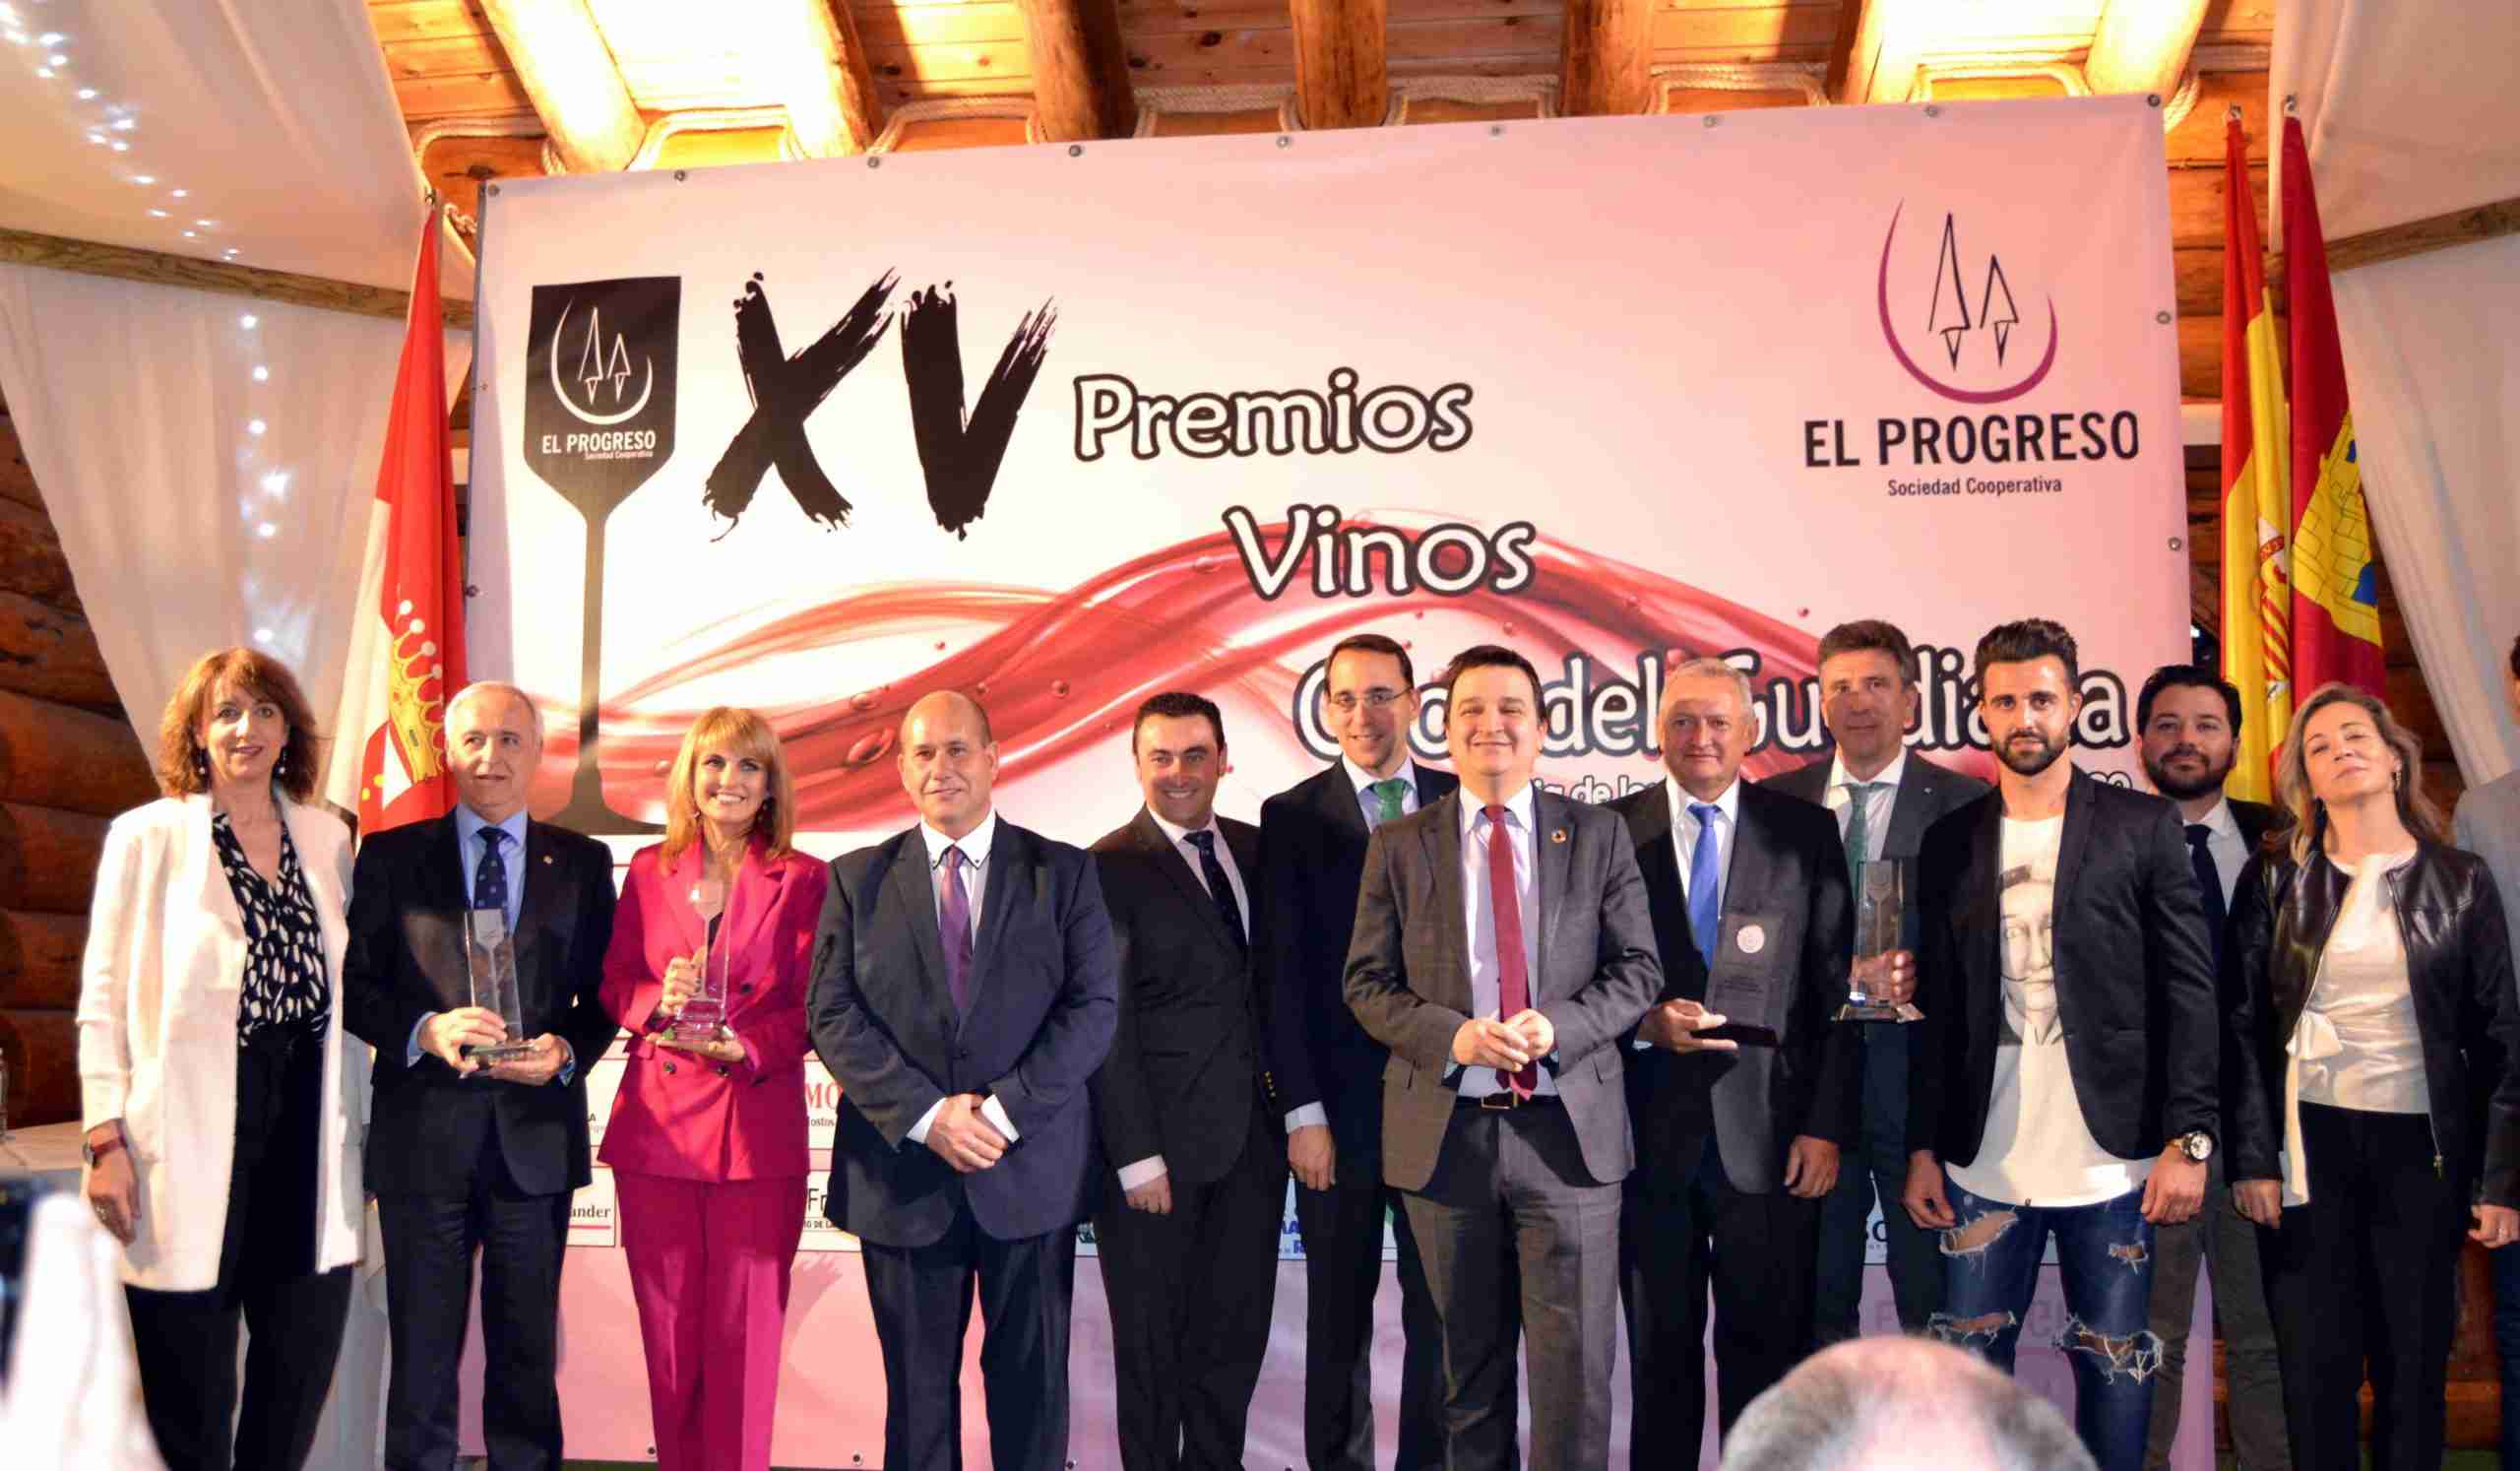 Éxito de los 15 Premios “Vinos Ojos del Guadiana” de El Progreso con la solidaridad, la cultura y el cooperativismo como protagonistas 2